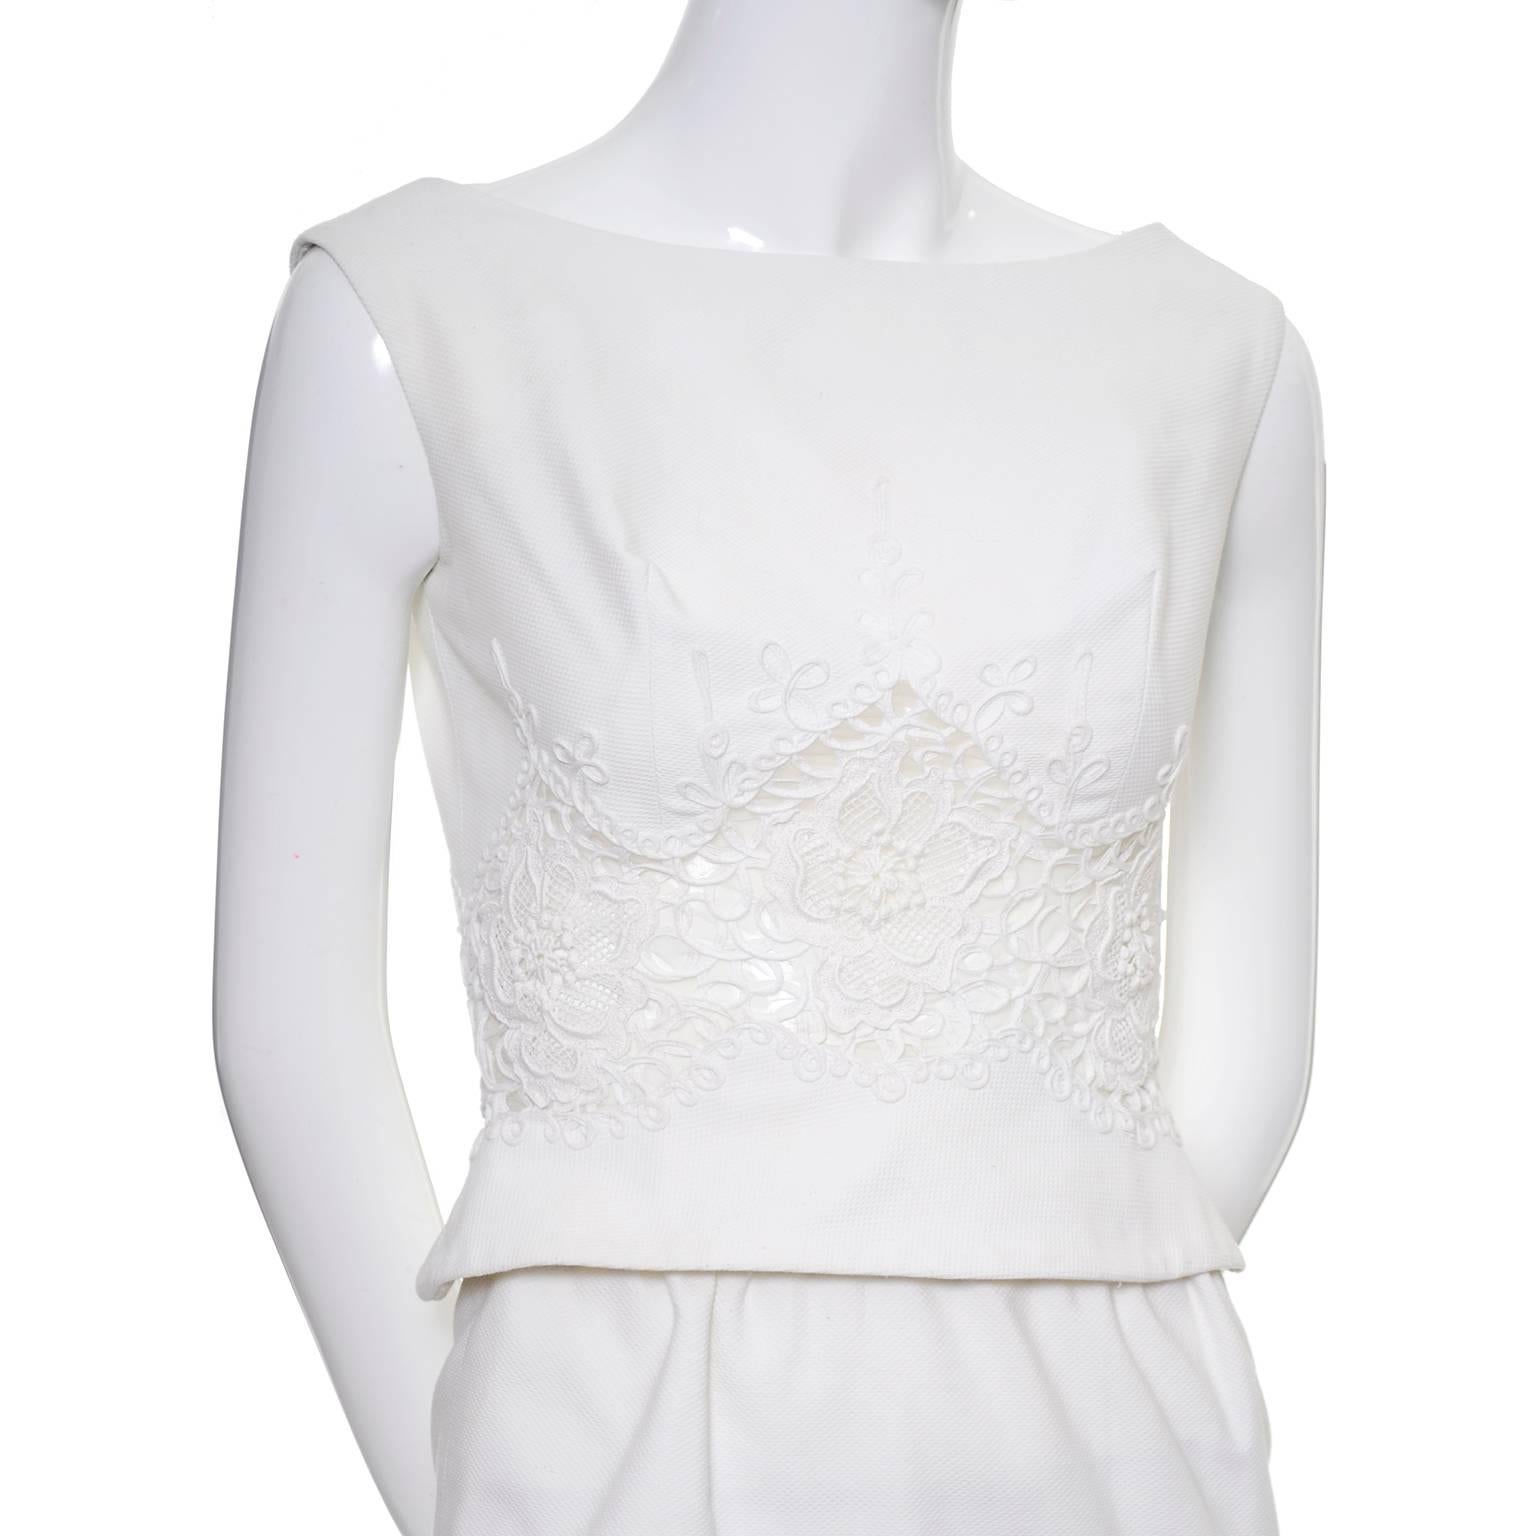 Carlye White Pique Vintage Dress 2pc Lace Mesh Peek a Boo Peplum Bodice XS For Sale 1